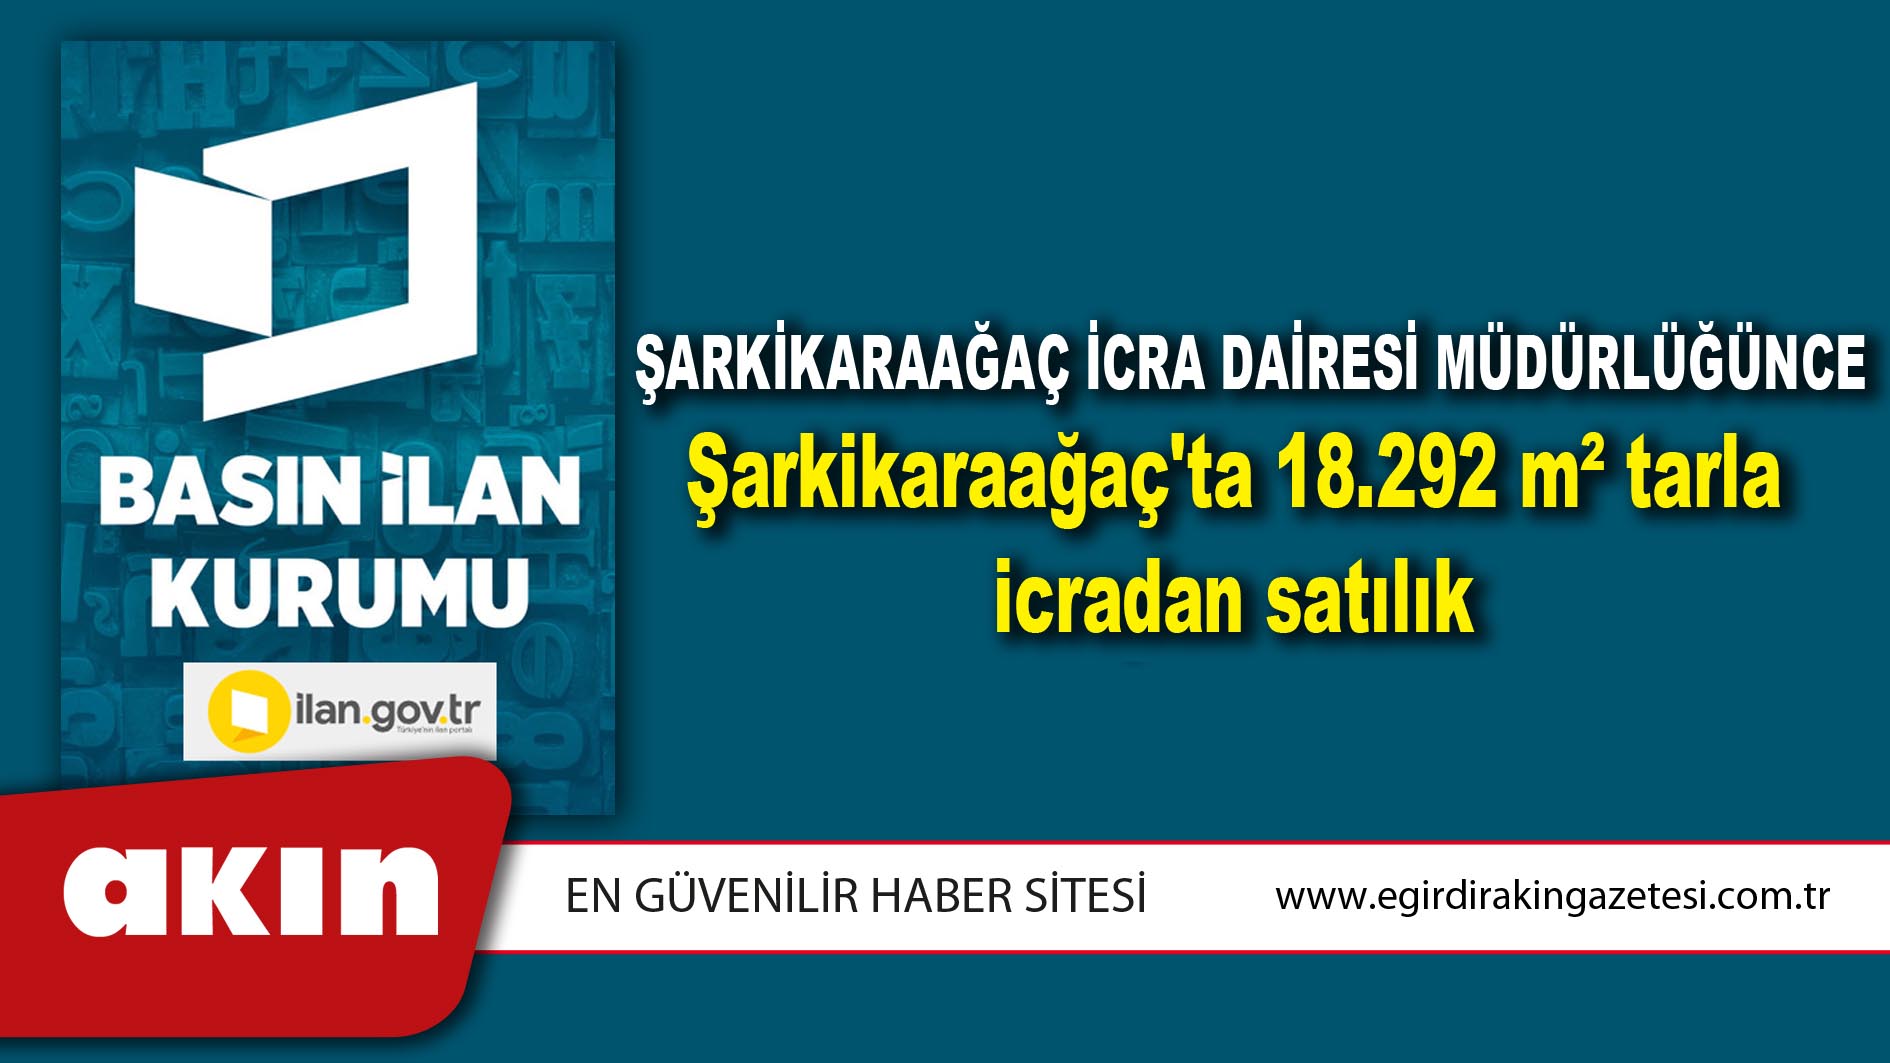 Şarkikaraağaç İcra Dairesi Müdürlüğünce Şarkikaraağaç'ta 18.292 m² tarla icradan satılık